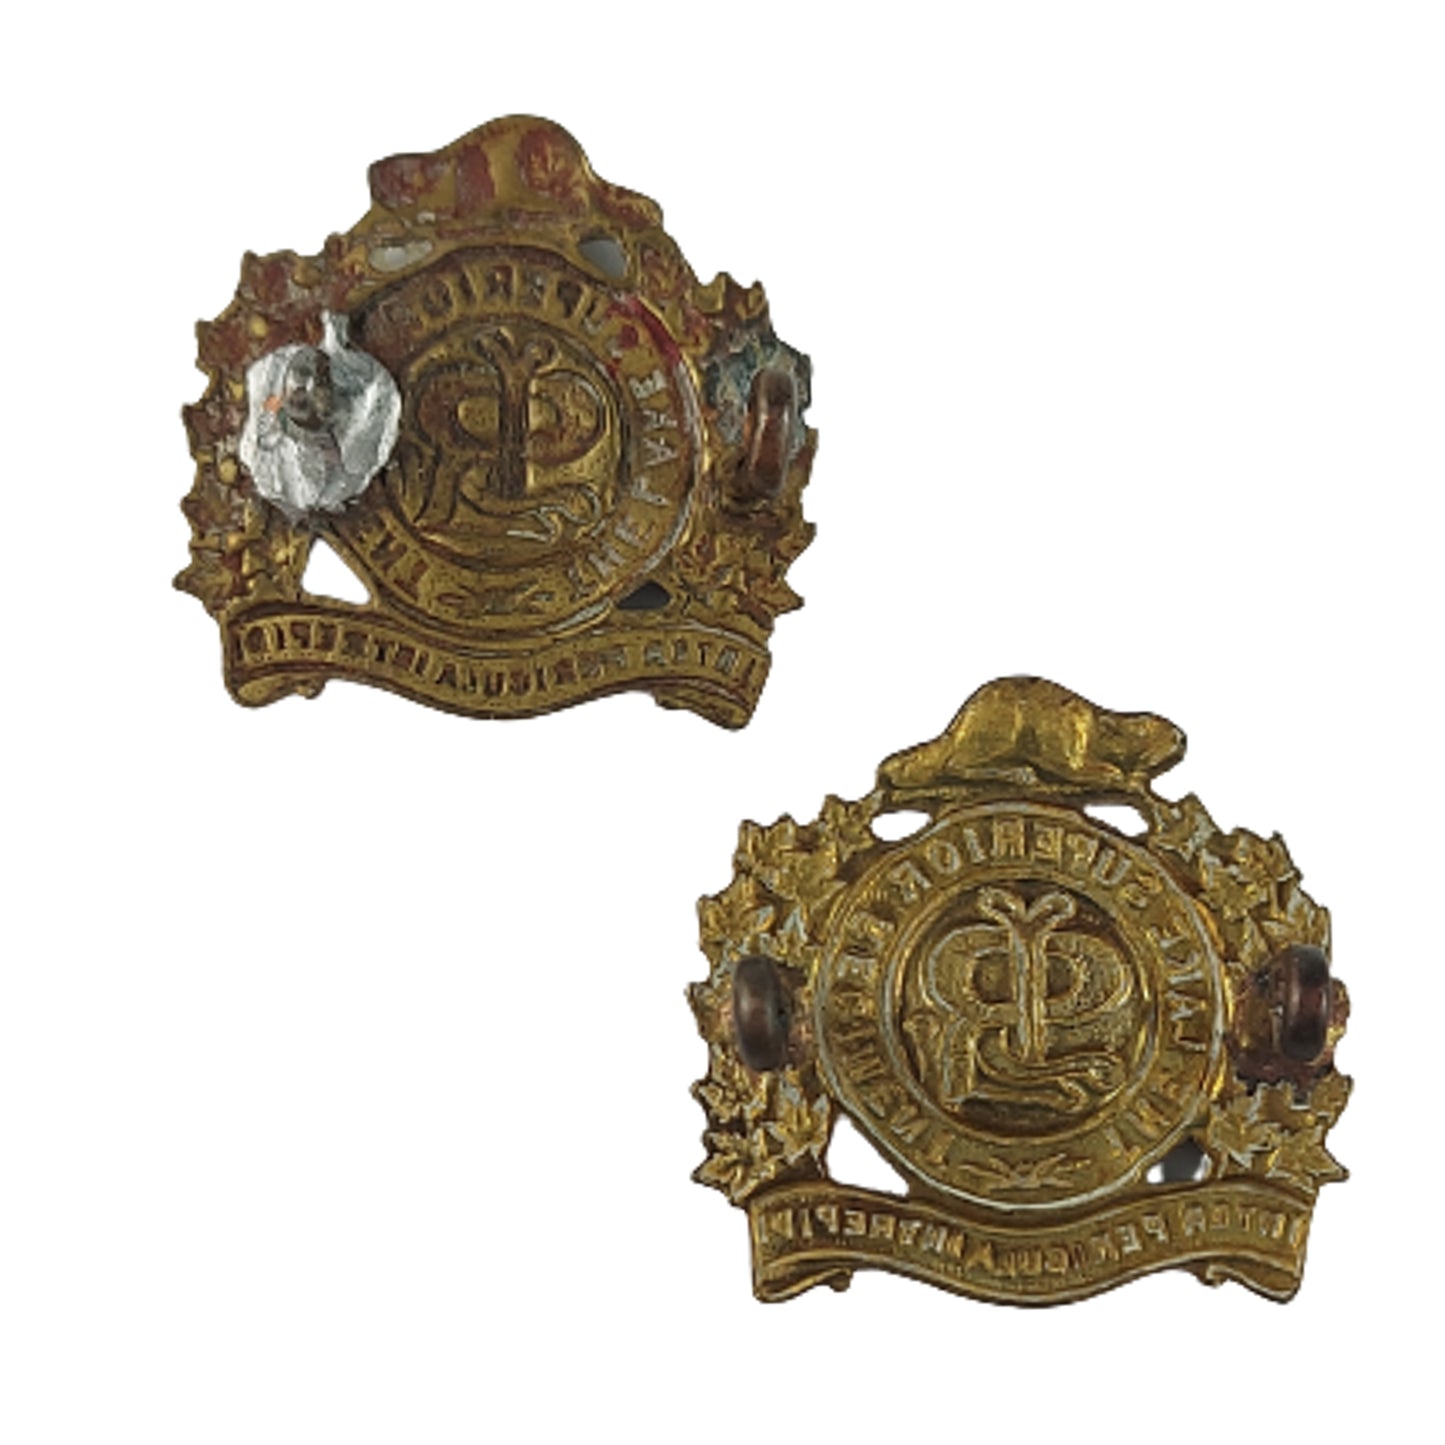 1922 Design Lake Superior Regiment Collar Badge Pair